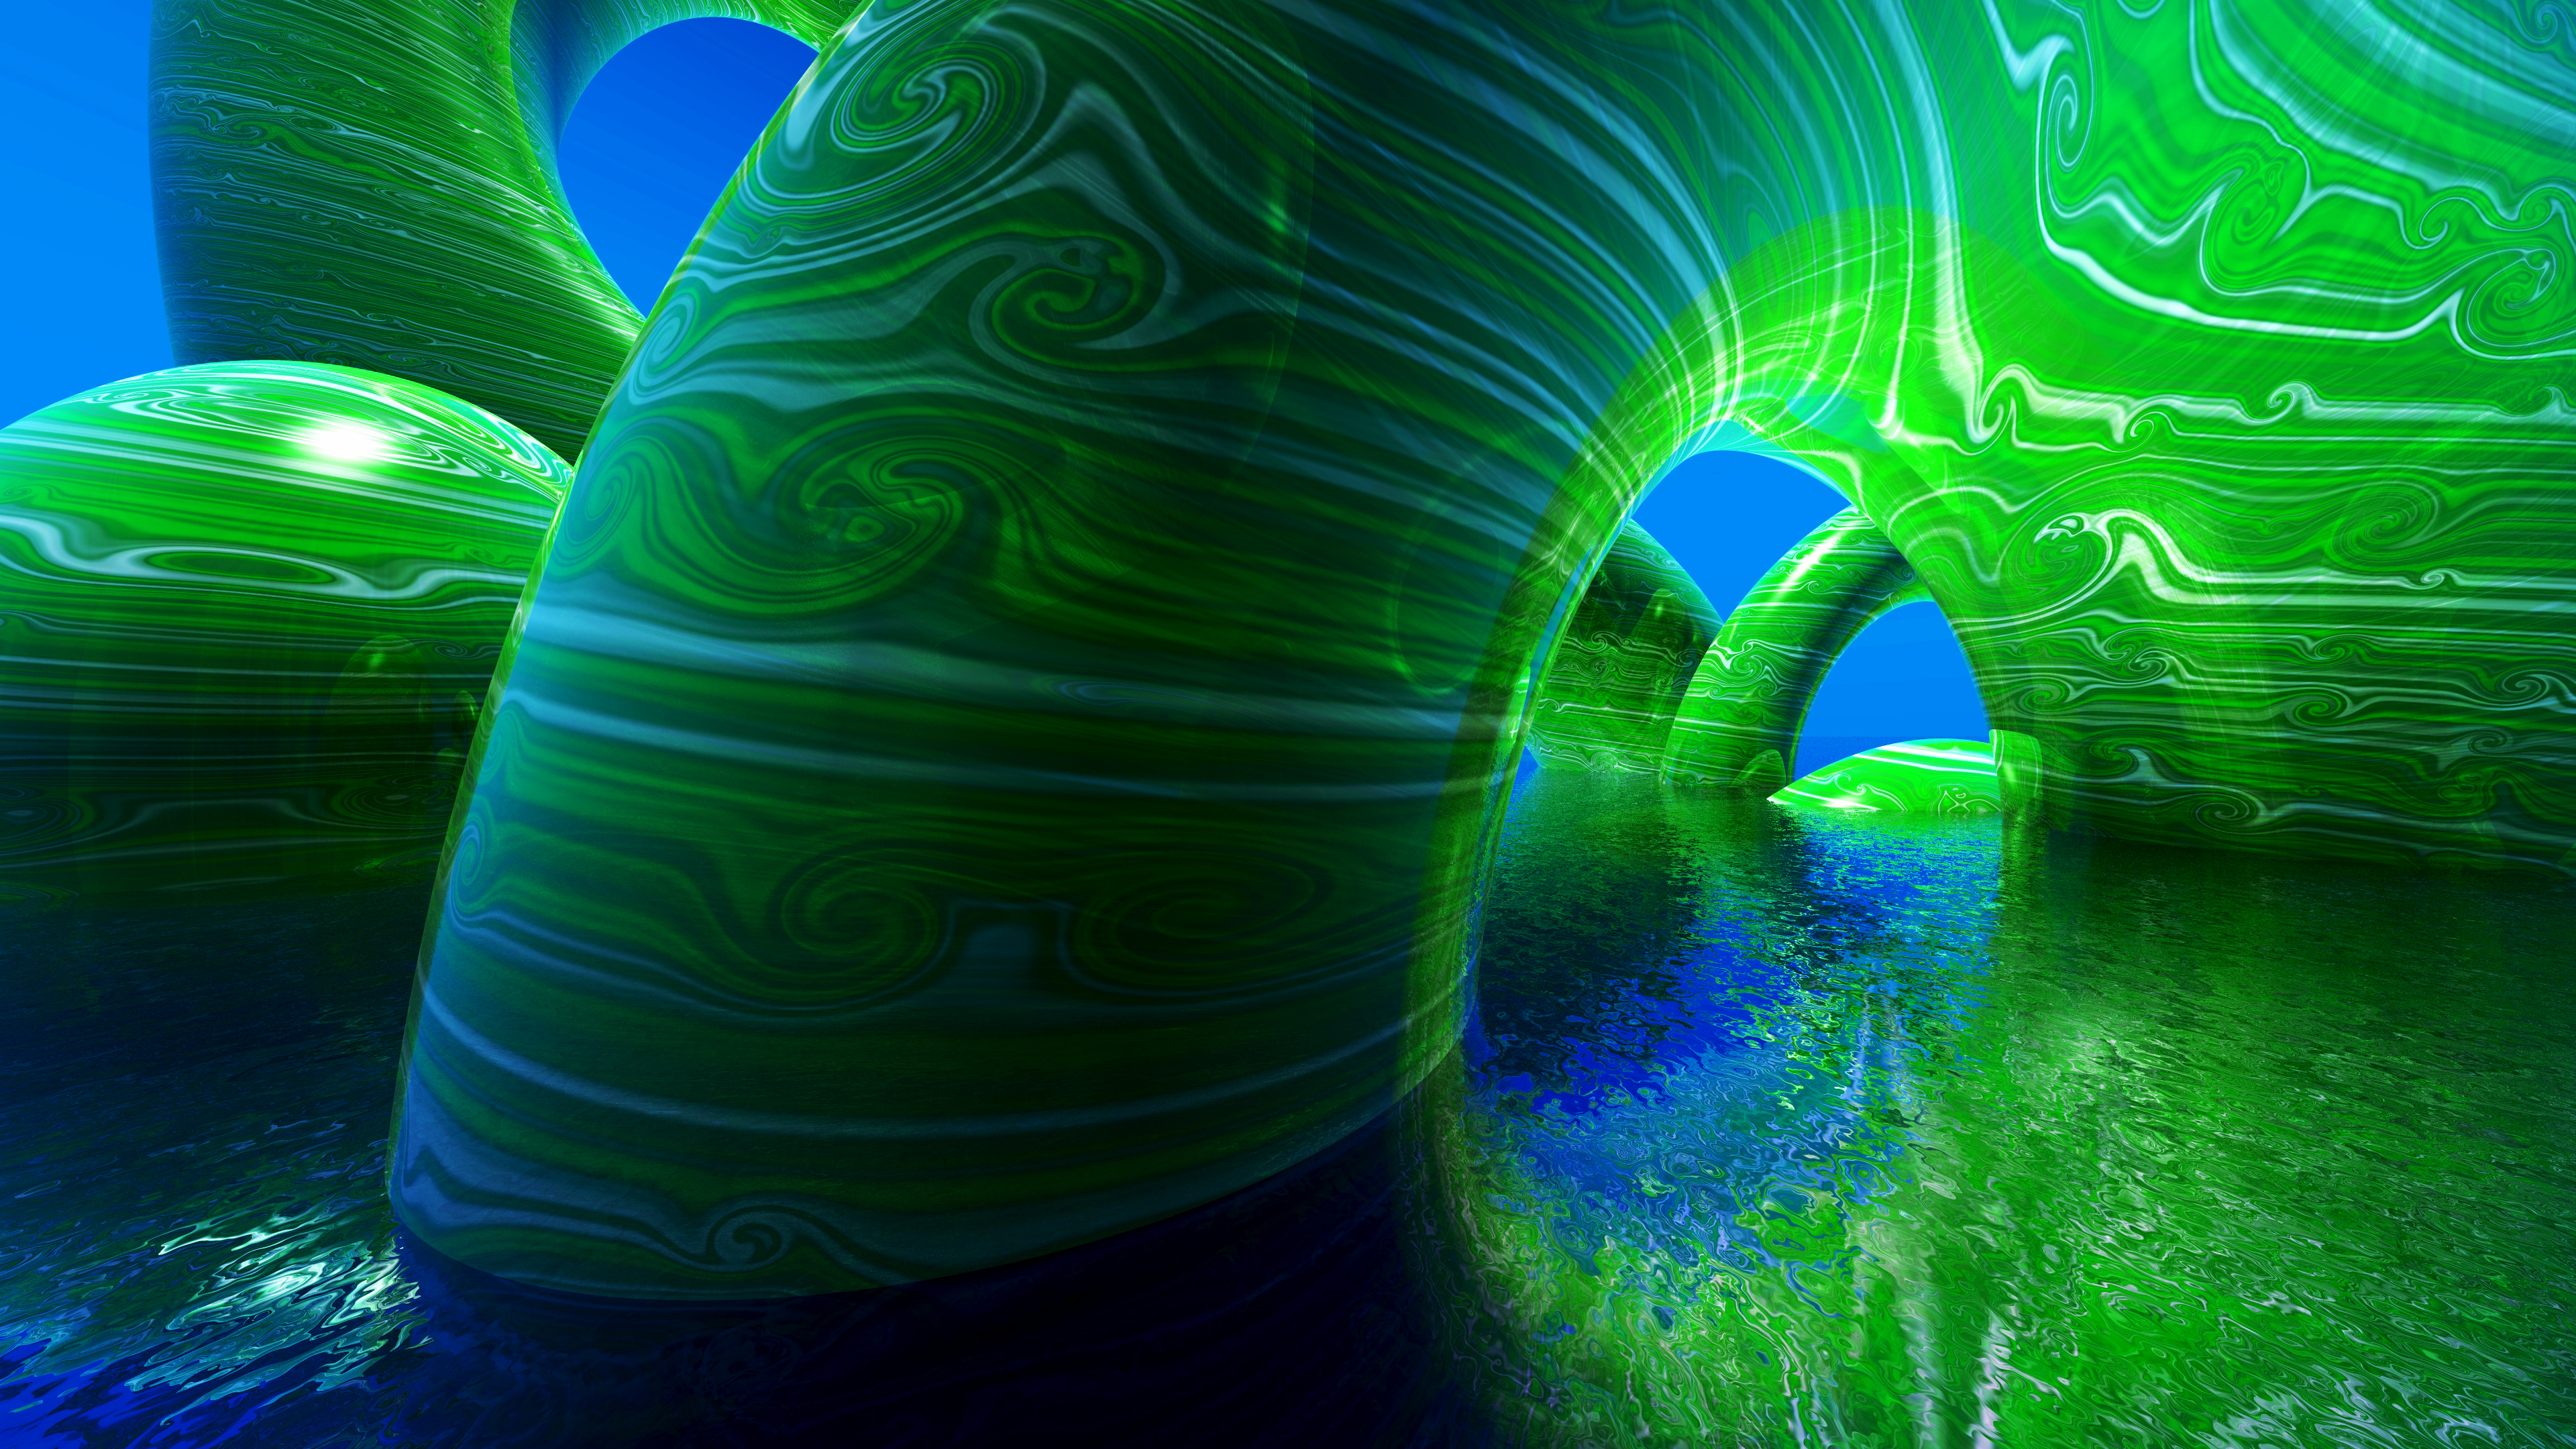 WallpaperUniversitycom 3D Green Blue Abstract 4K Wallpaper